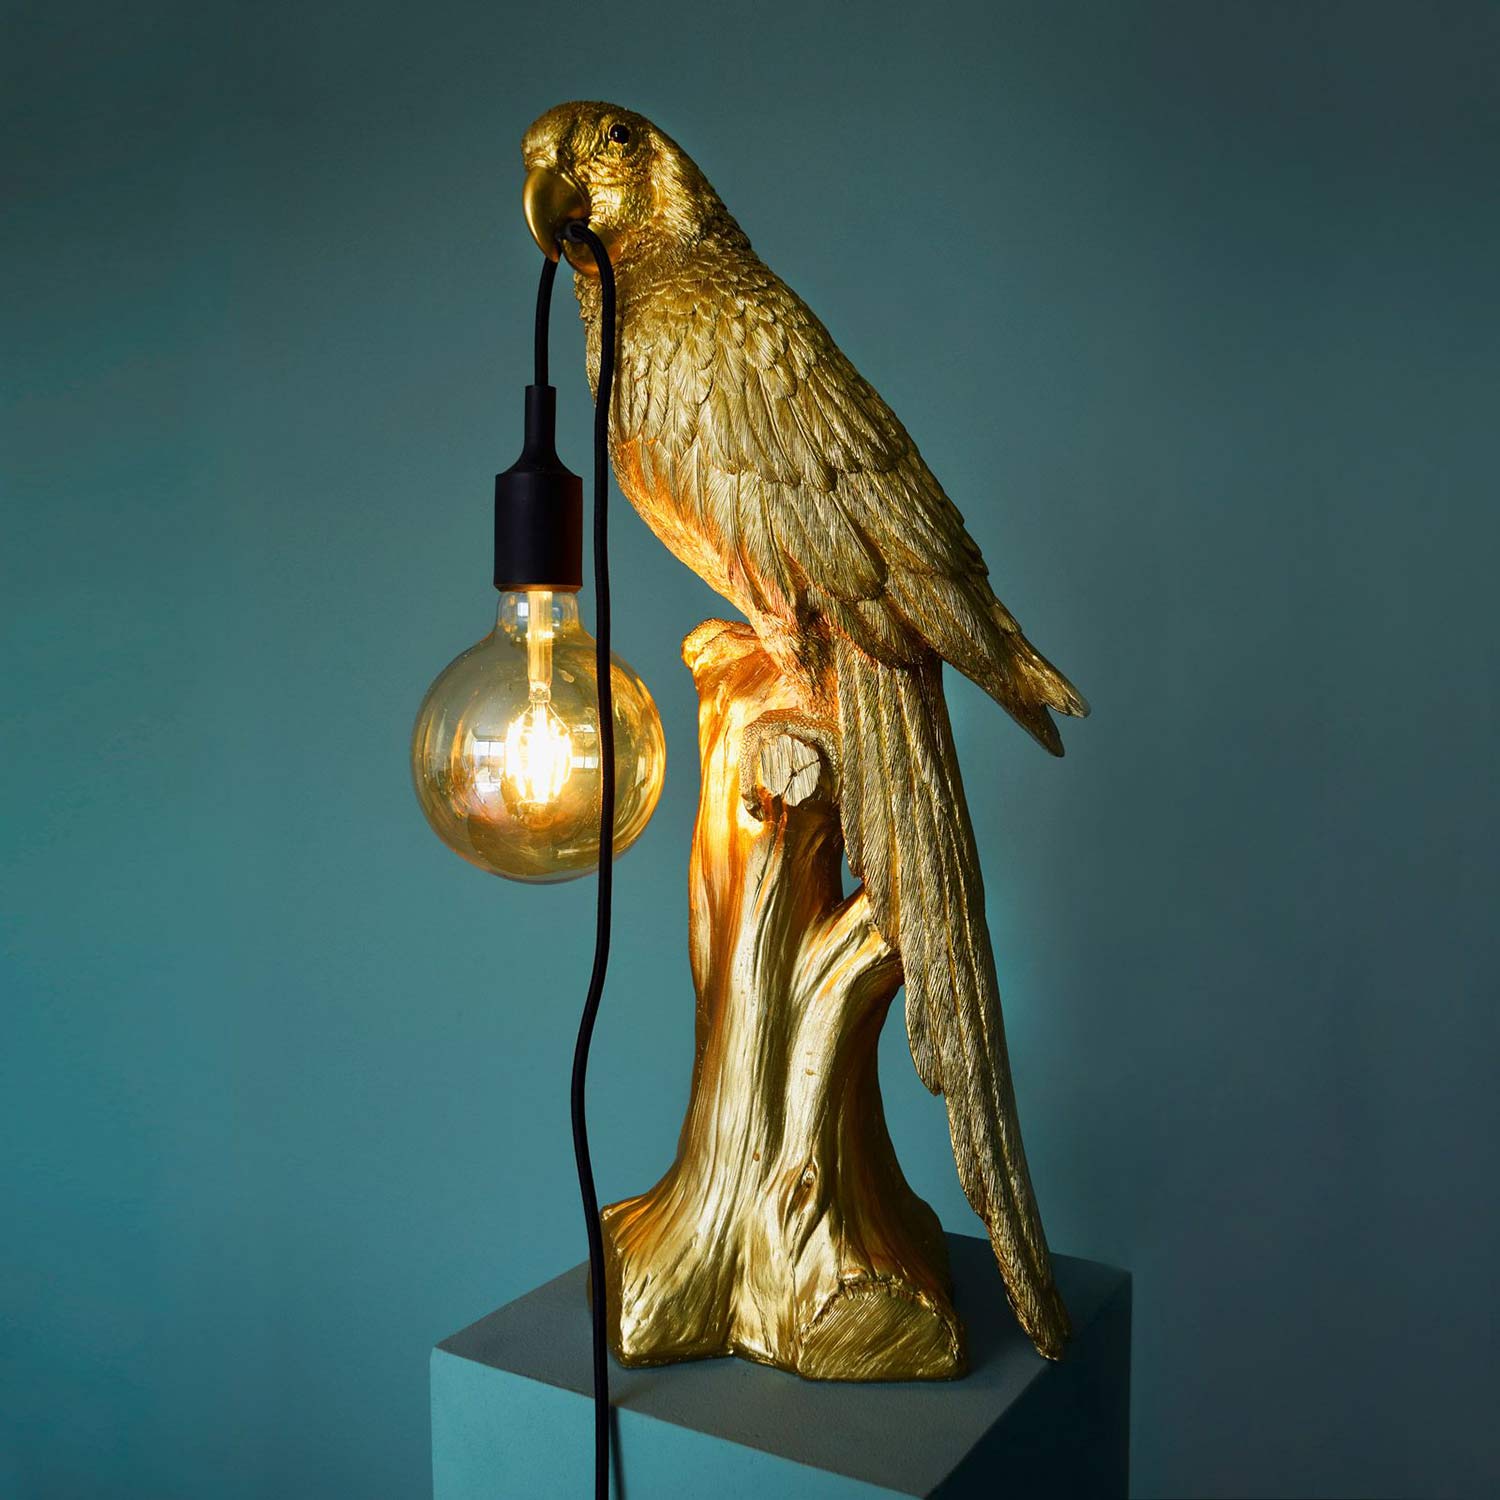 Aranyszínű papagáj figurás, 61 cm magas, trópusi, glamour stílusú asztali lámpa, szürkéskék háttér előtt..